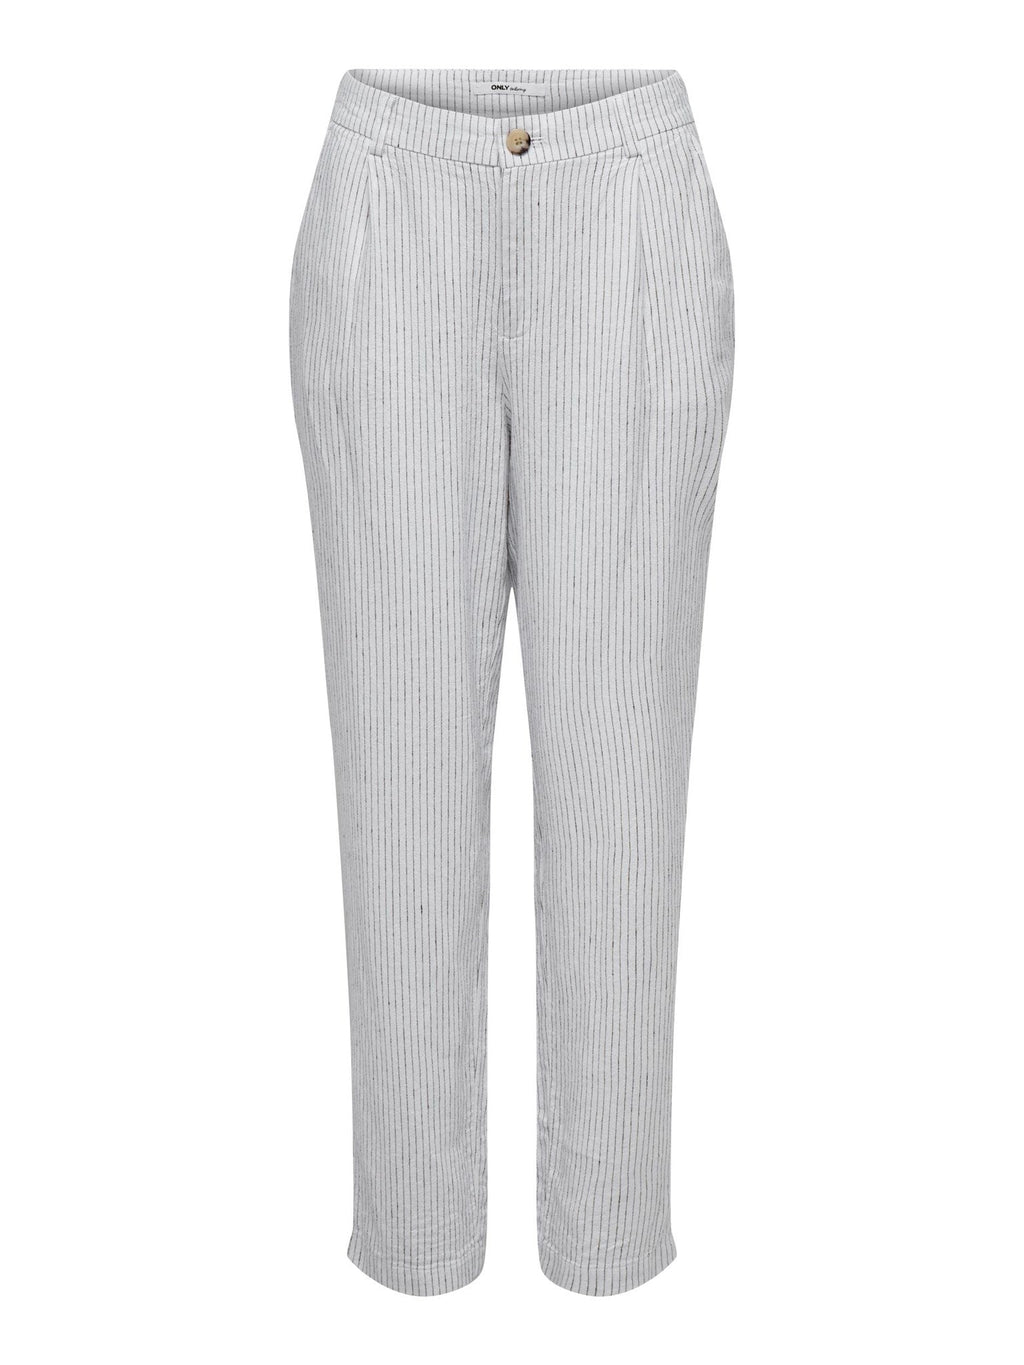 Pantalones de rayas de lino olga - blanco brillante